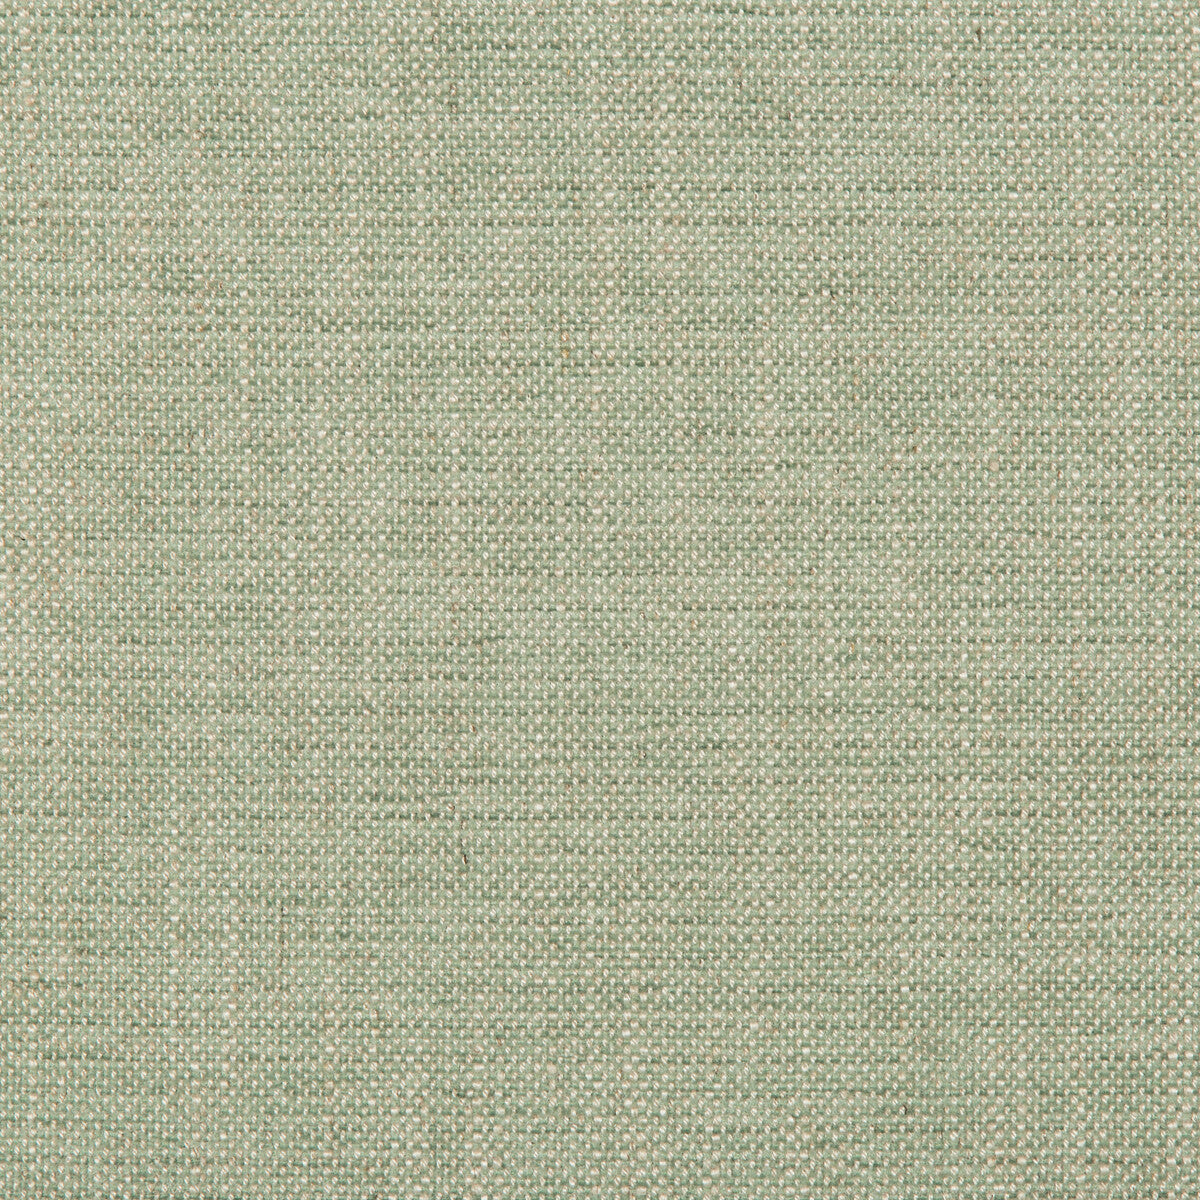 Kravet Design fabric in 35714-13 color - pattern 35714.13.0 - by Kravet Design